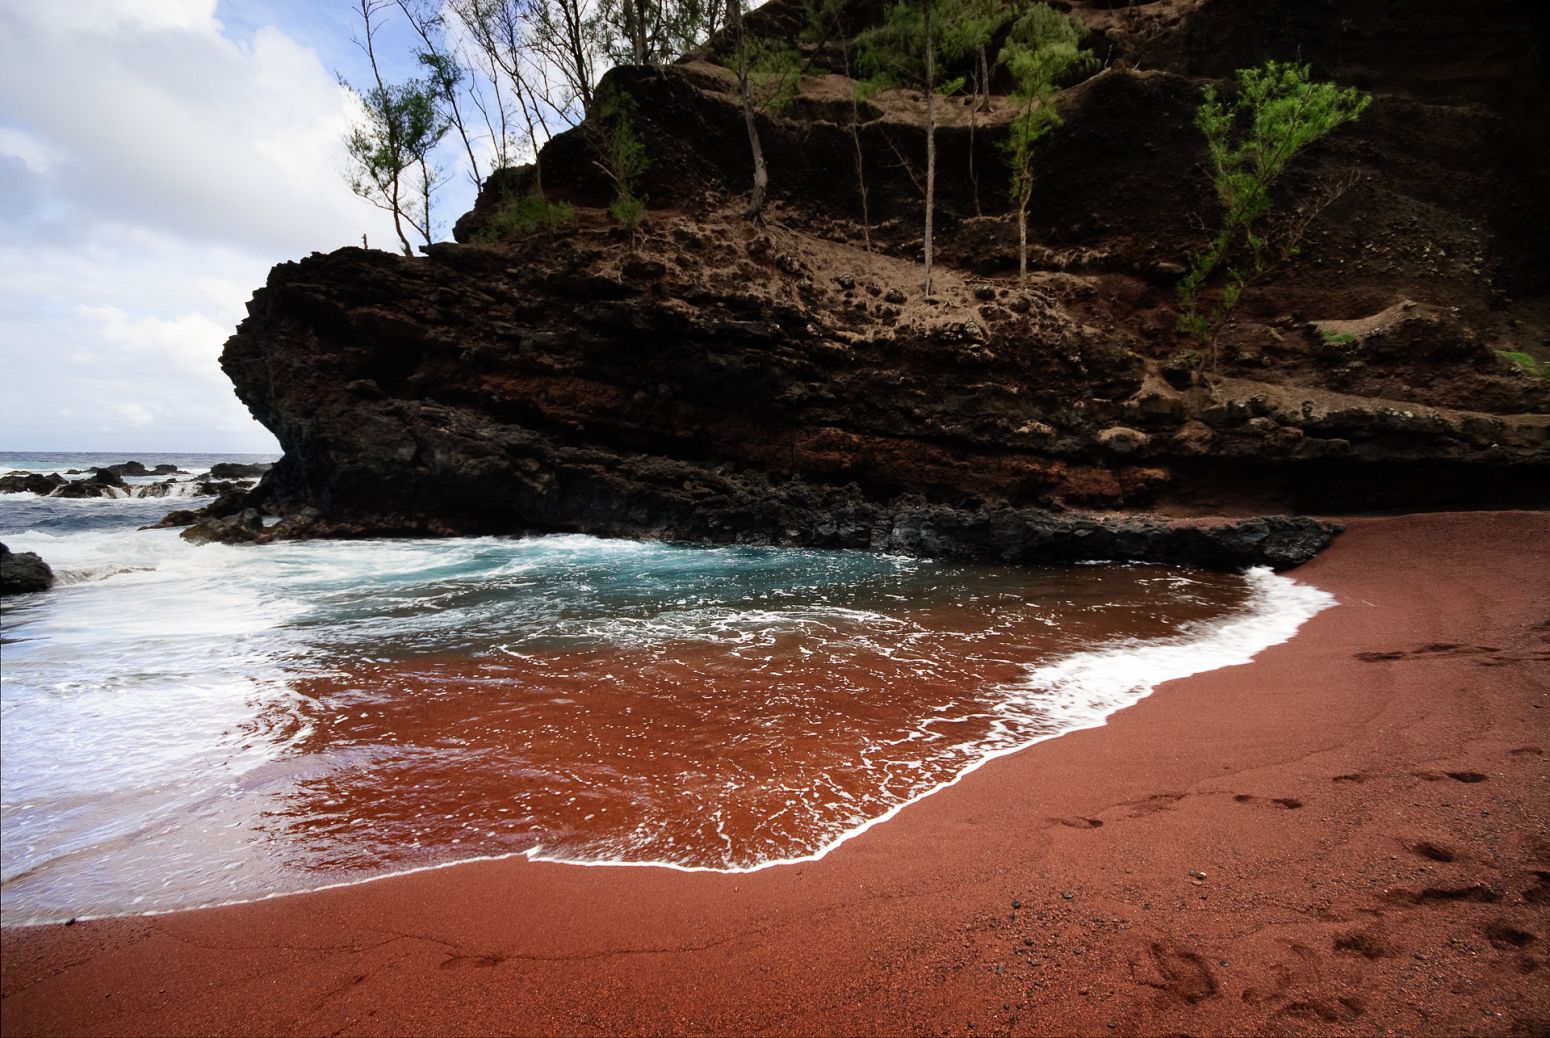 Red sand beach, Maui, Hawaii, USA